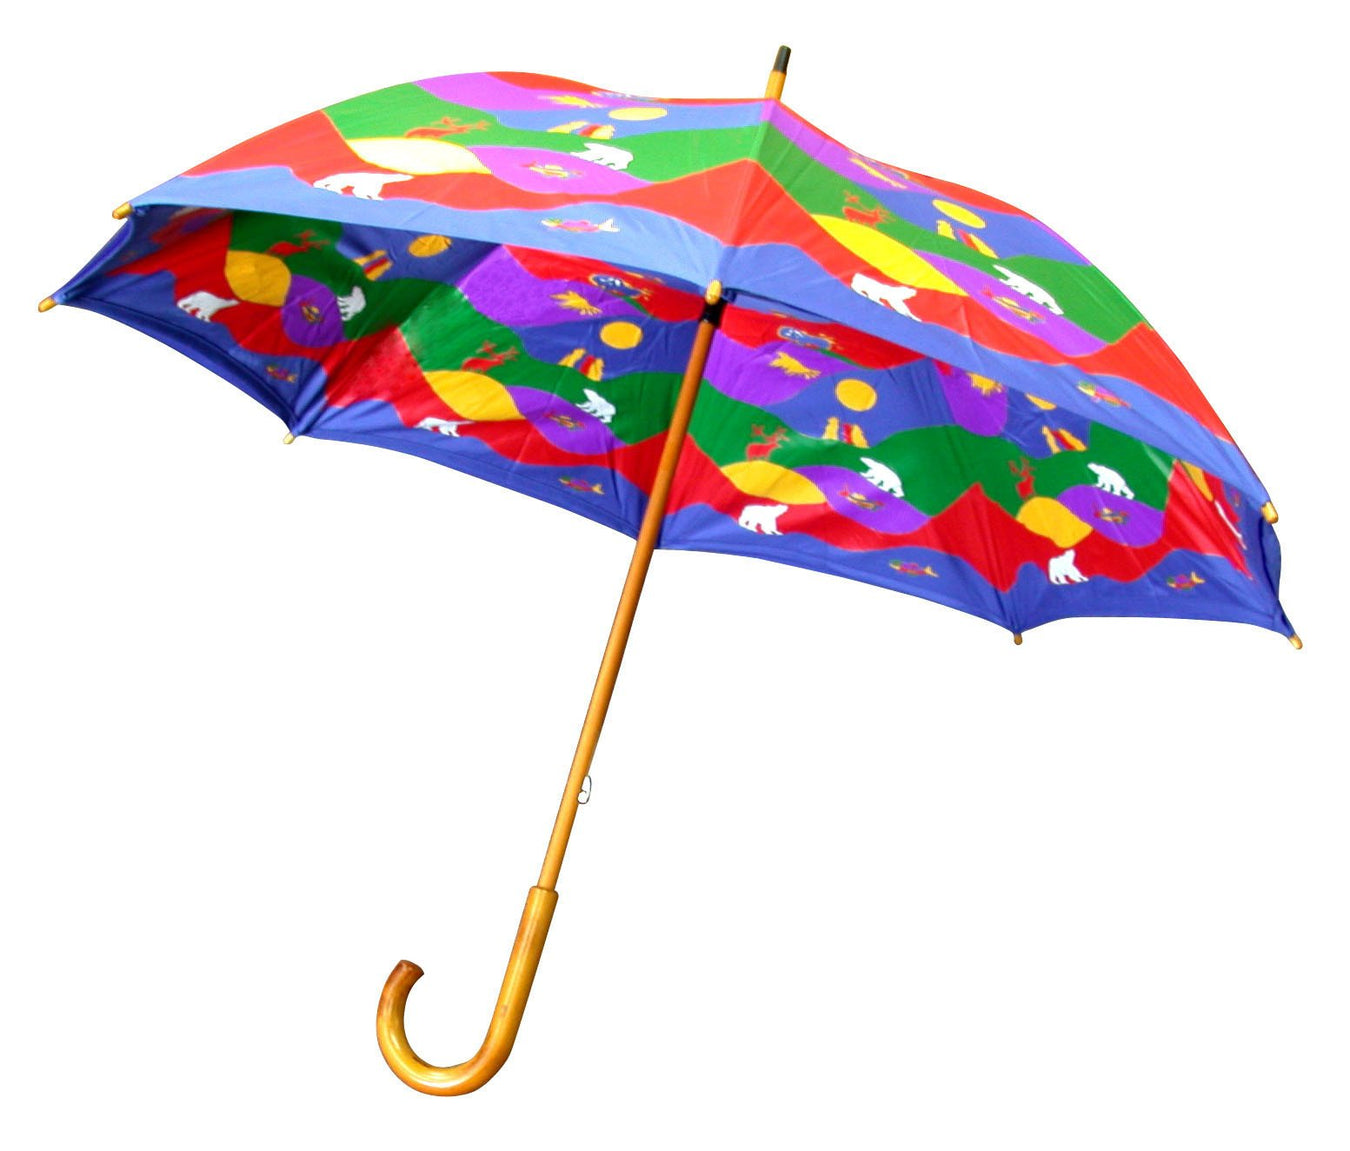 Long Artist Umbrellas - Oscardo